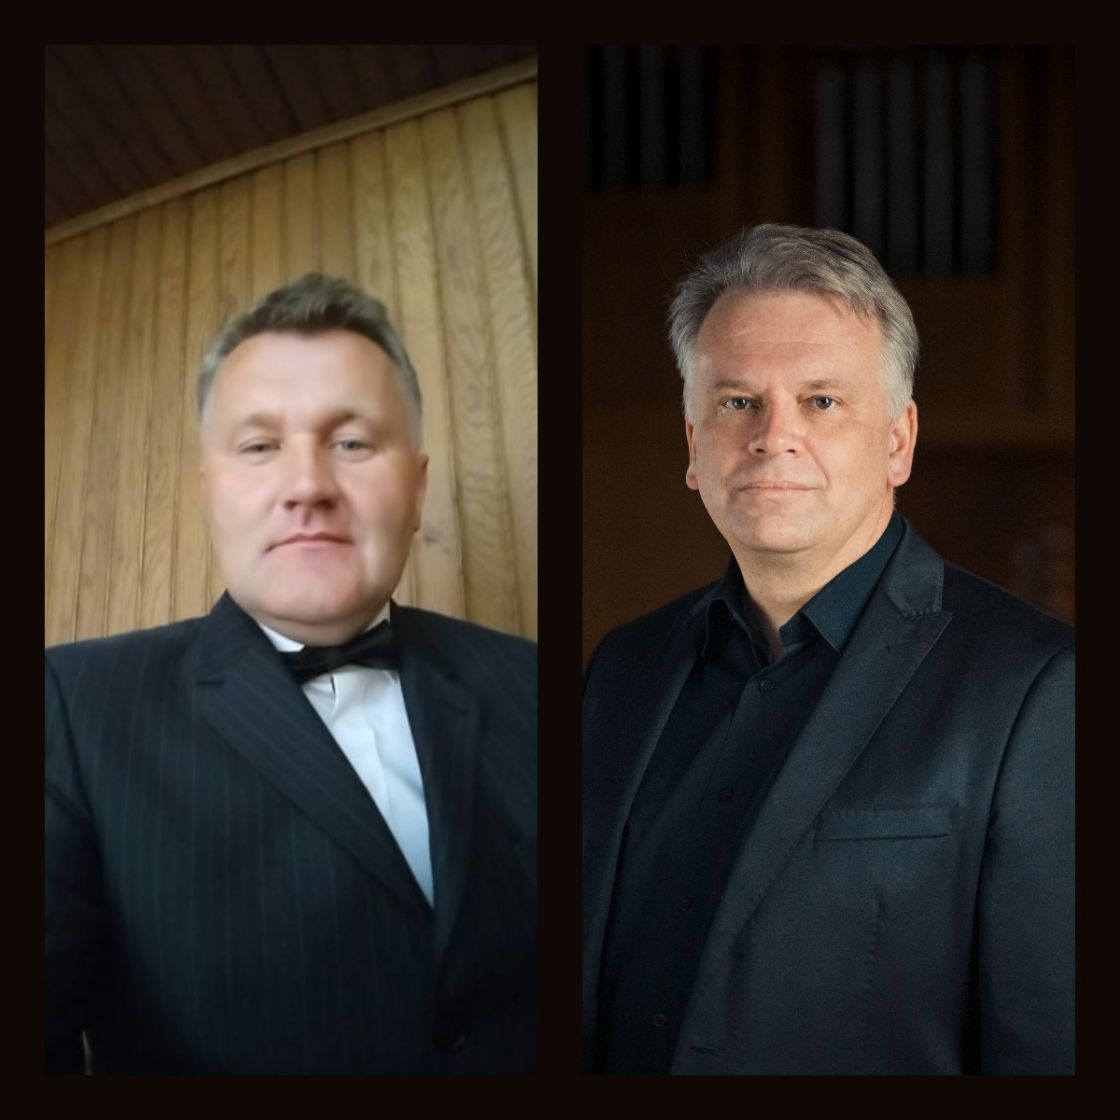 Podkarpacki Festiwal Organowy 2021 - koncert finałowy w Starej Wsi